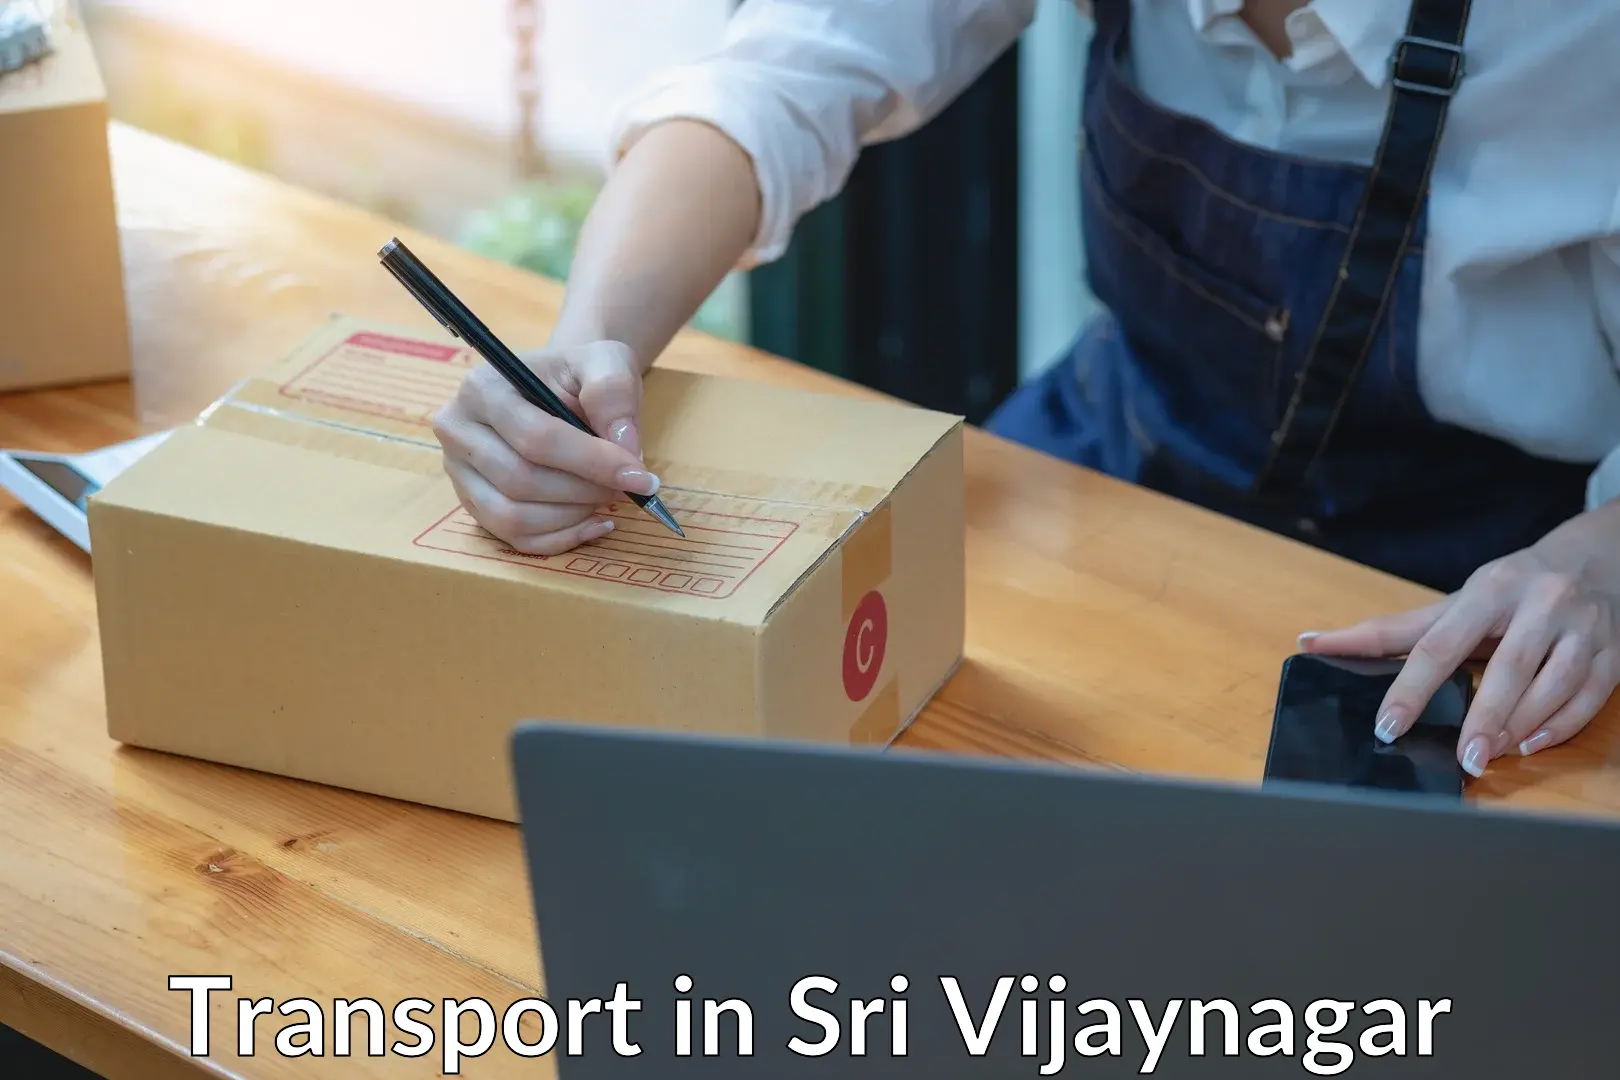 Parcel transport services in Sri Vijaynagar